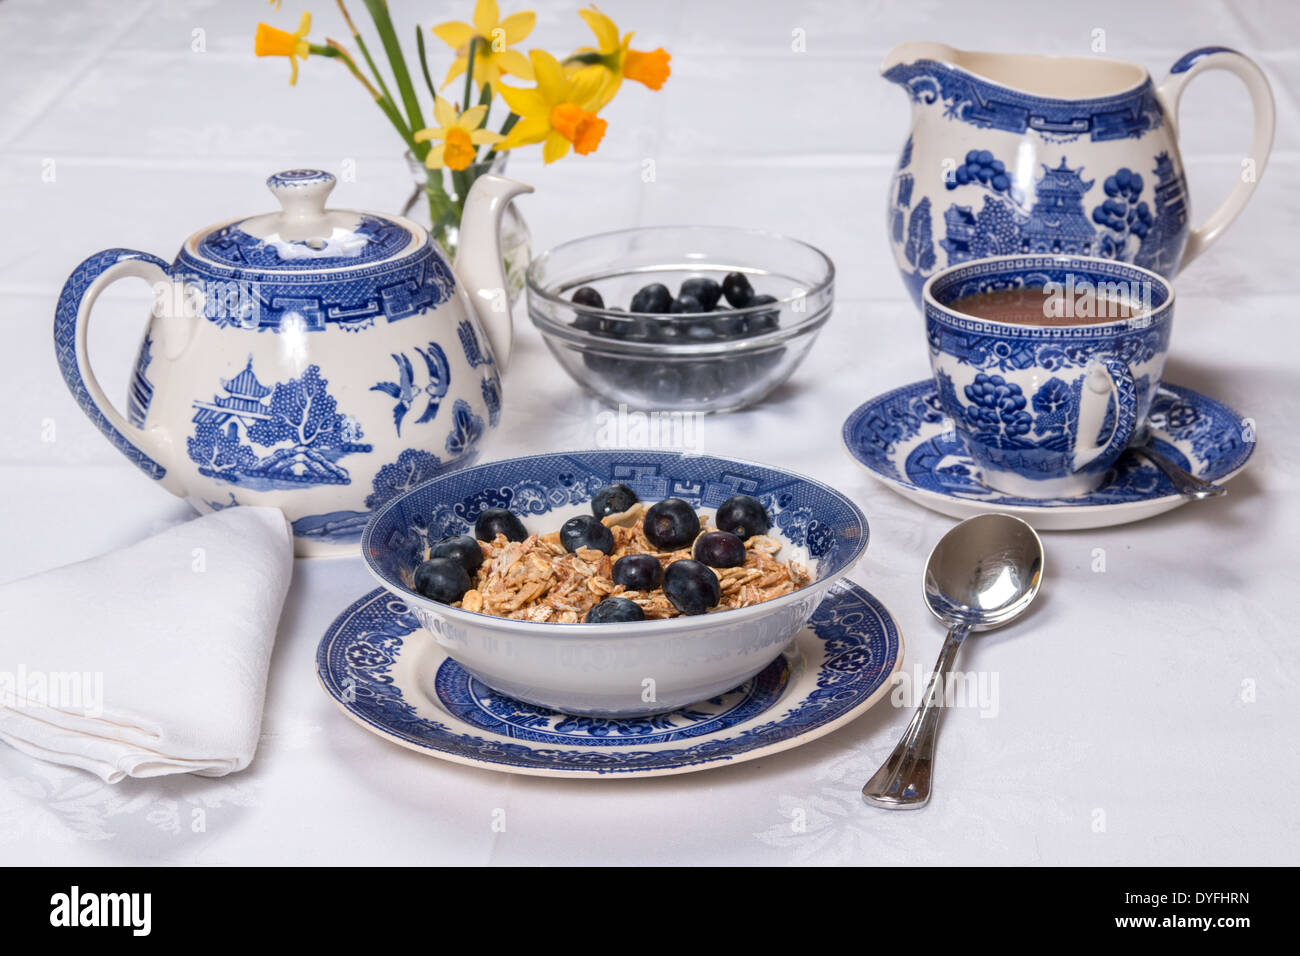 Frühstück mit Müsli/Müsli und Heidelbeeren Muster Geschirr auf einer weißen Damast Tischdecke mit Tee und Milch (21 von 26) Stockfoto